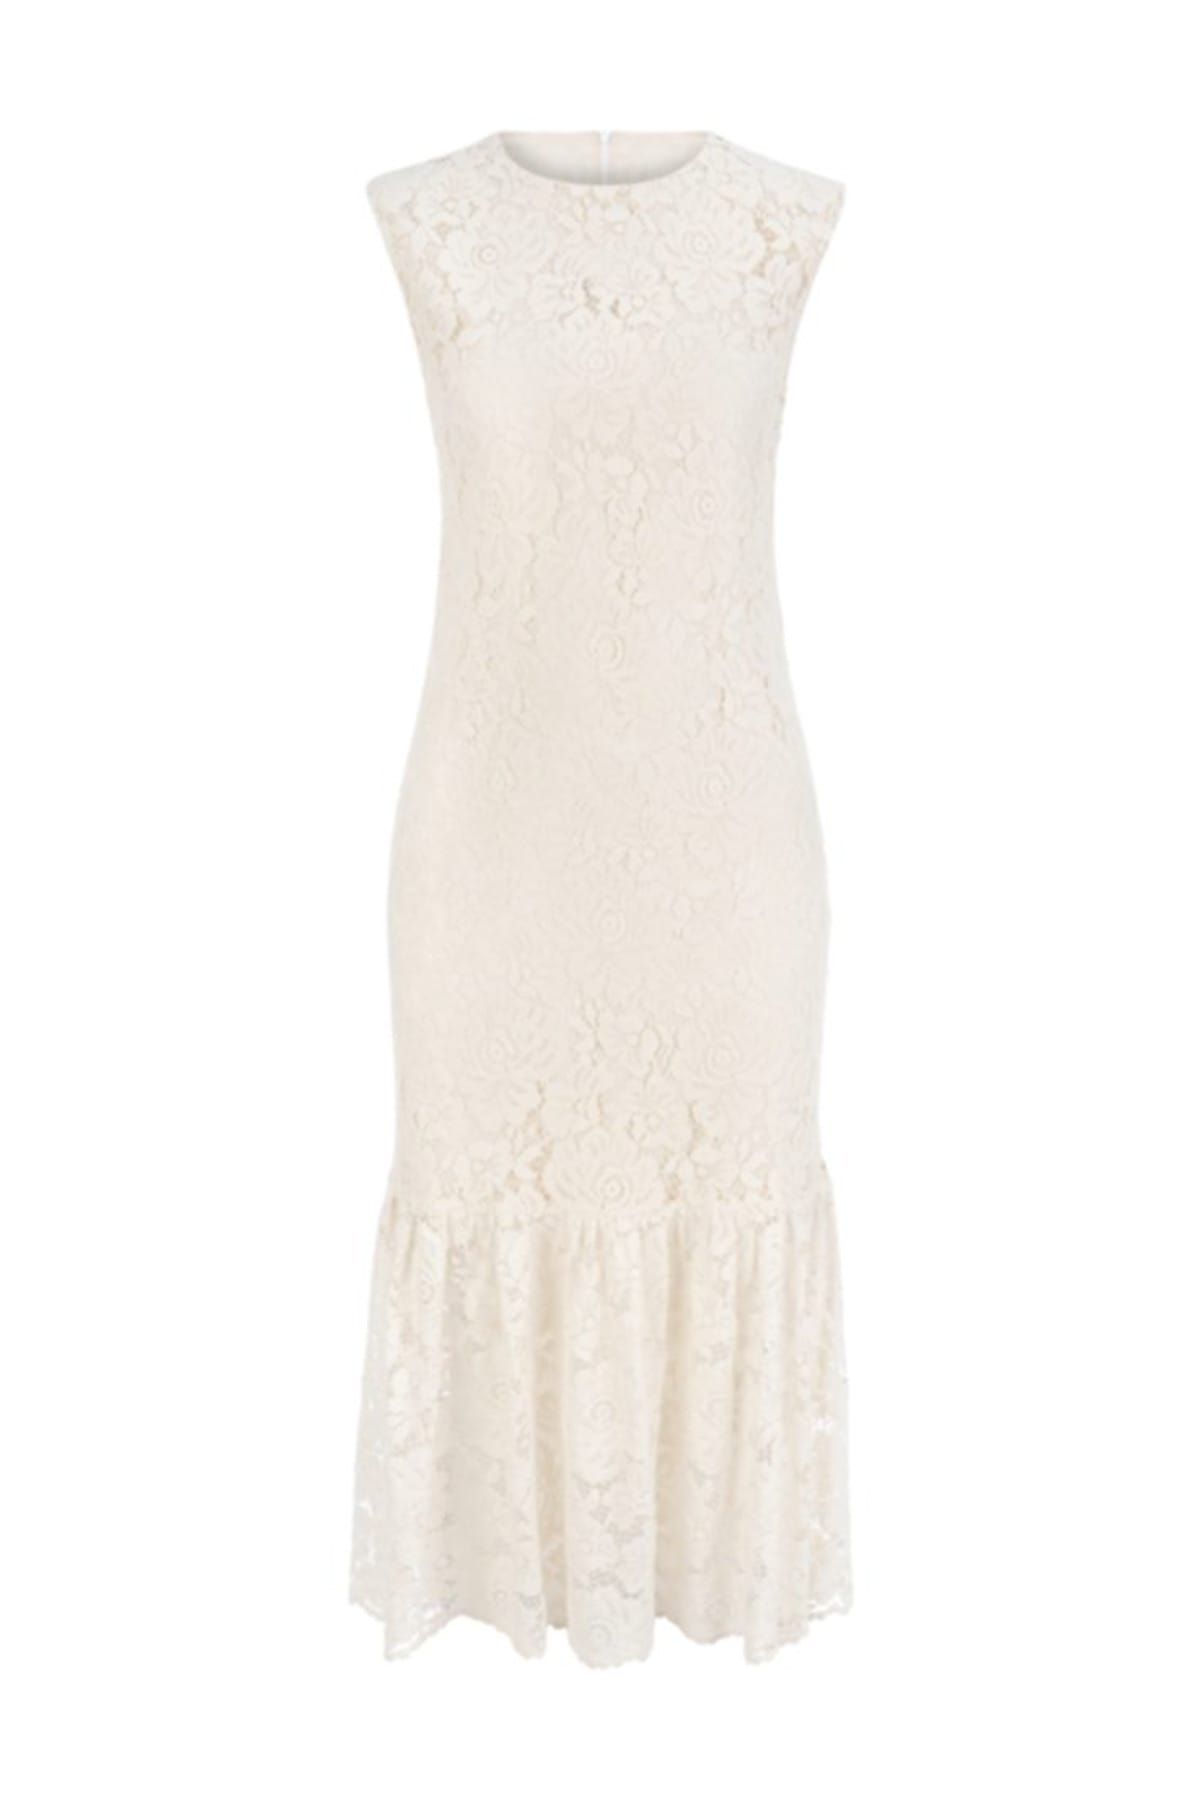 Mudo Kadın Kırık Beyaz Dantelli Midi Boy Elbise 1203060